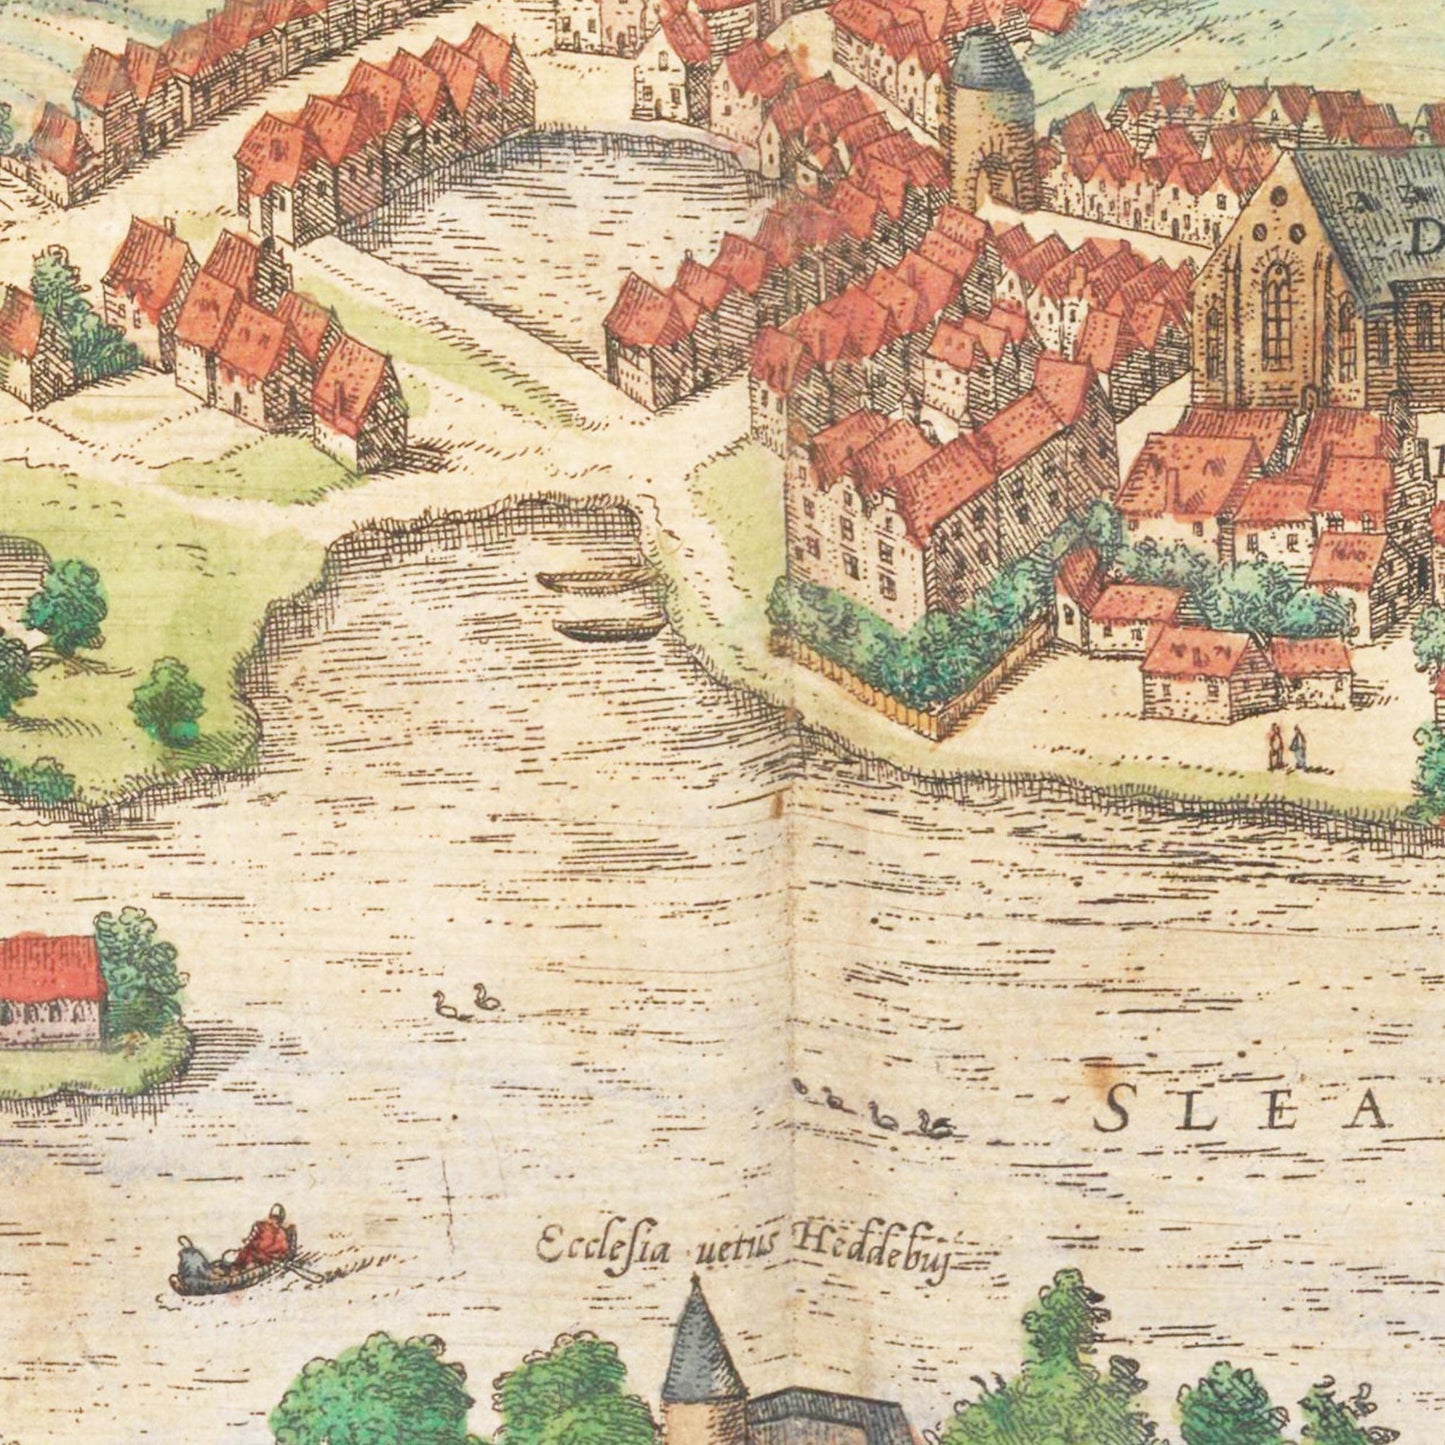 Historische Stadtansicht Schleswig um 1592